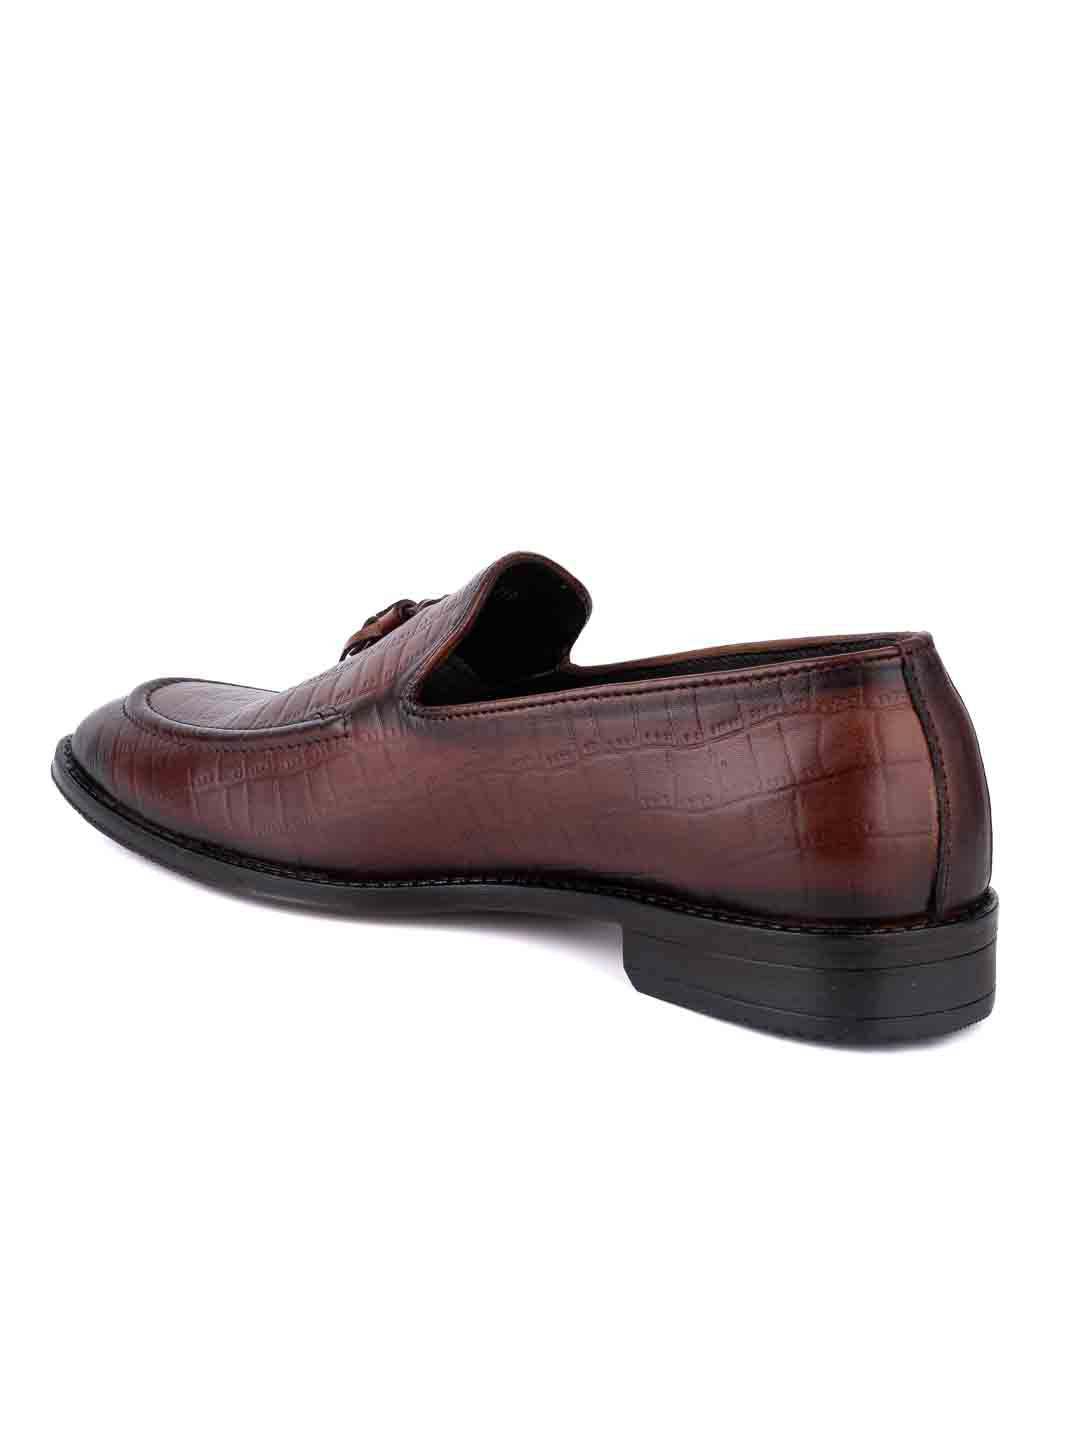  Footwear, Men Footwear, Brown Formal Loafers